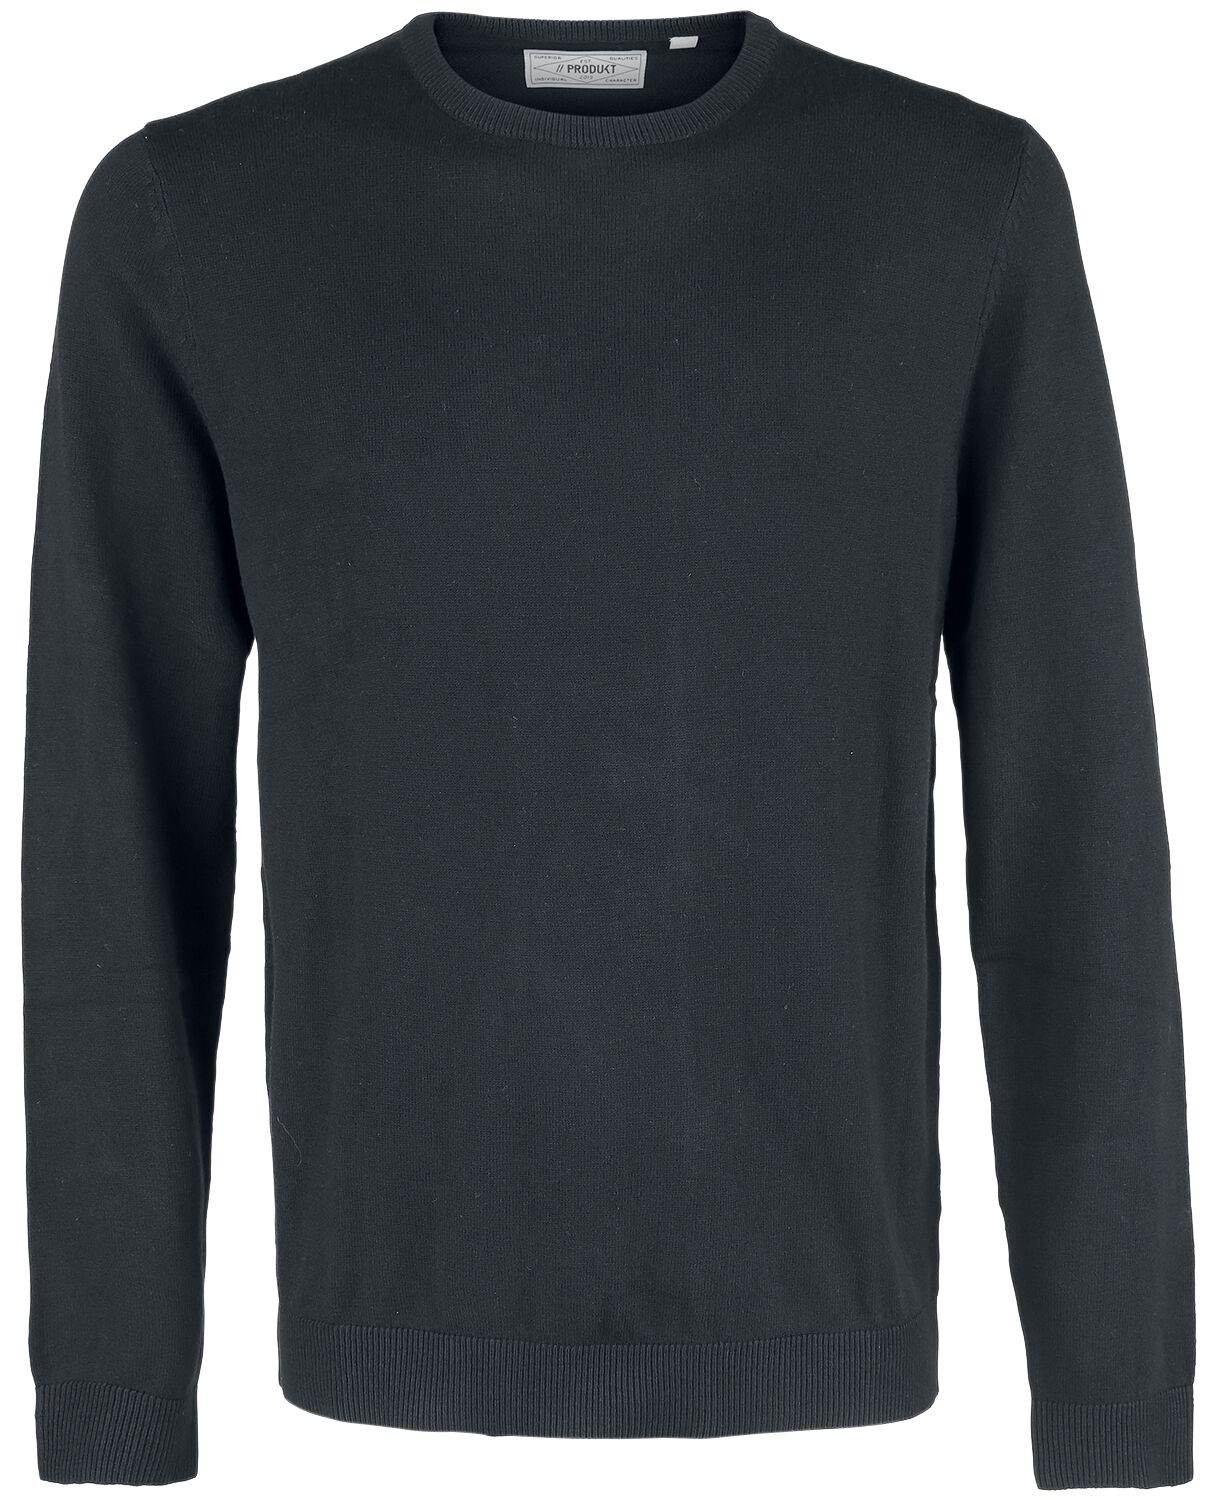 Sweat-shirt de Produkt - Tricot Basique Ras-Du-Cou - S - pour Homme - noir